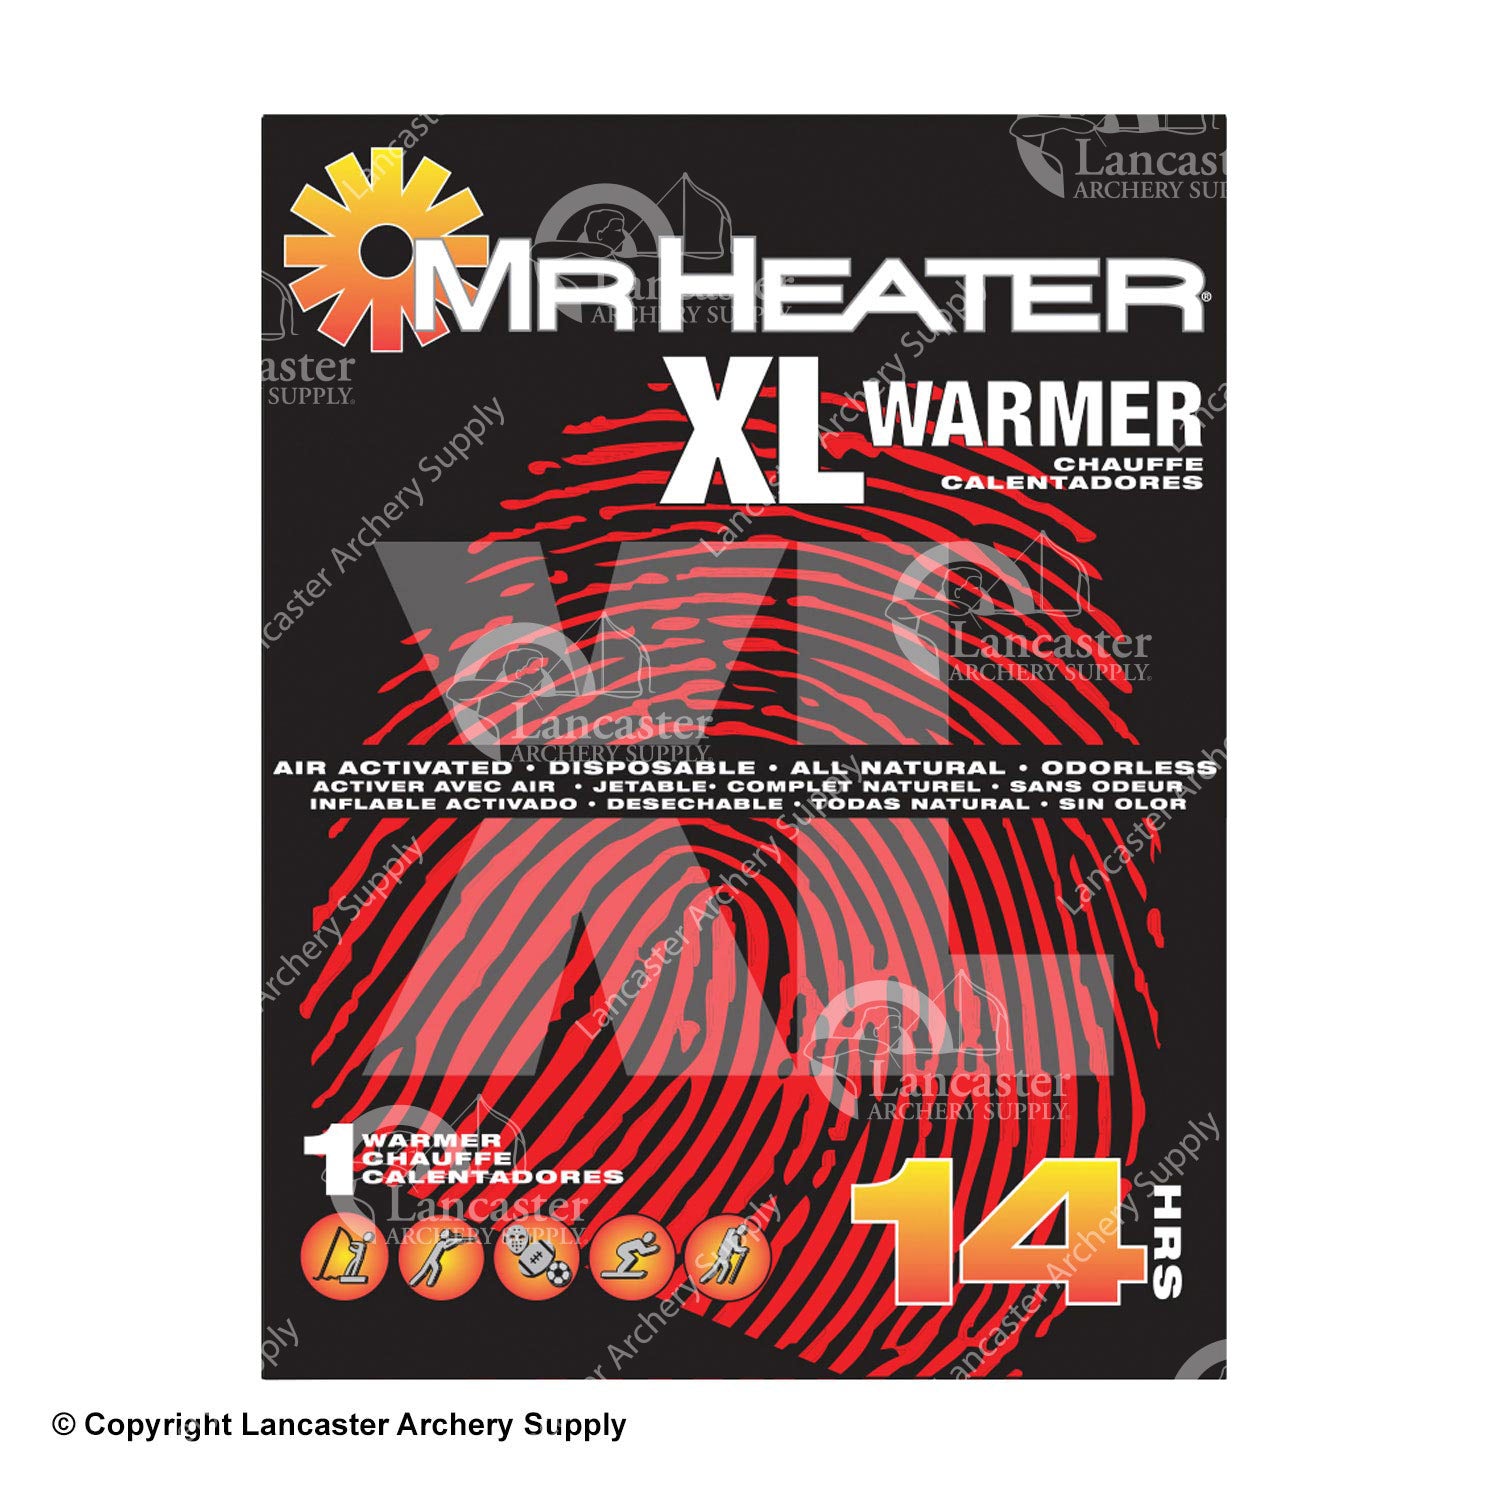 Mr. Heater XL Warmers